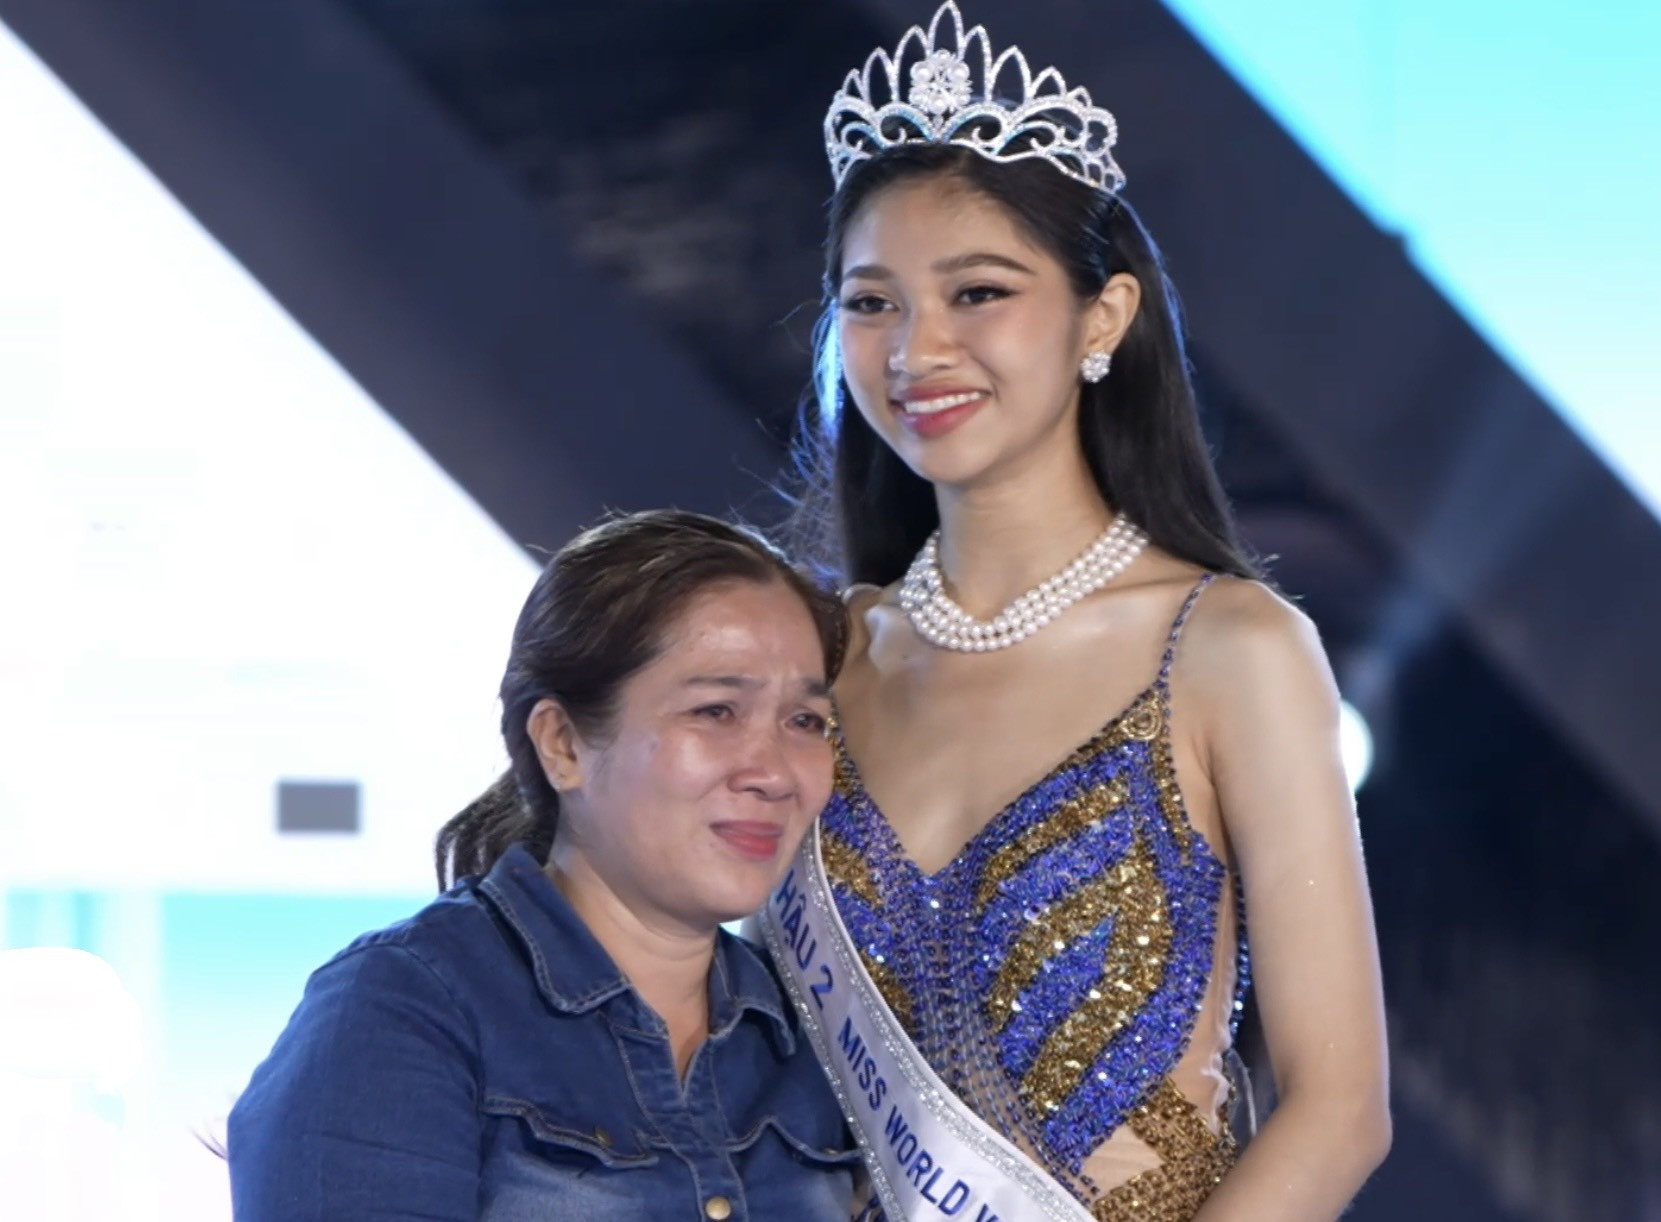 Á hậu Huỳnh Minh Kiên bật khóc nức nở trên sân khấu sau 1 tháng kể từ Miss World Vietnam, chuyện gì đã xảy ra? - ảnh 3